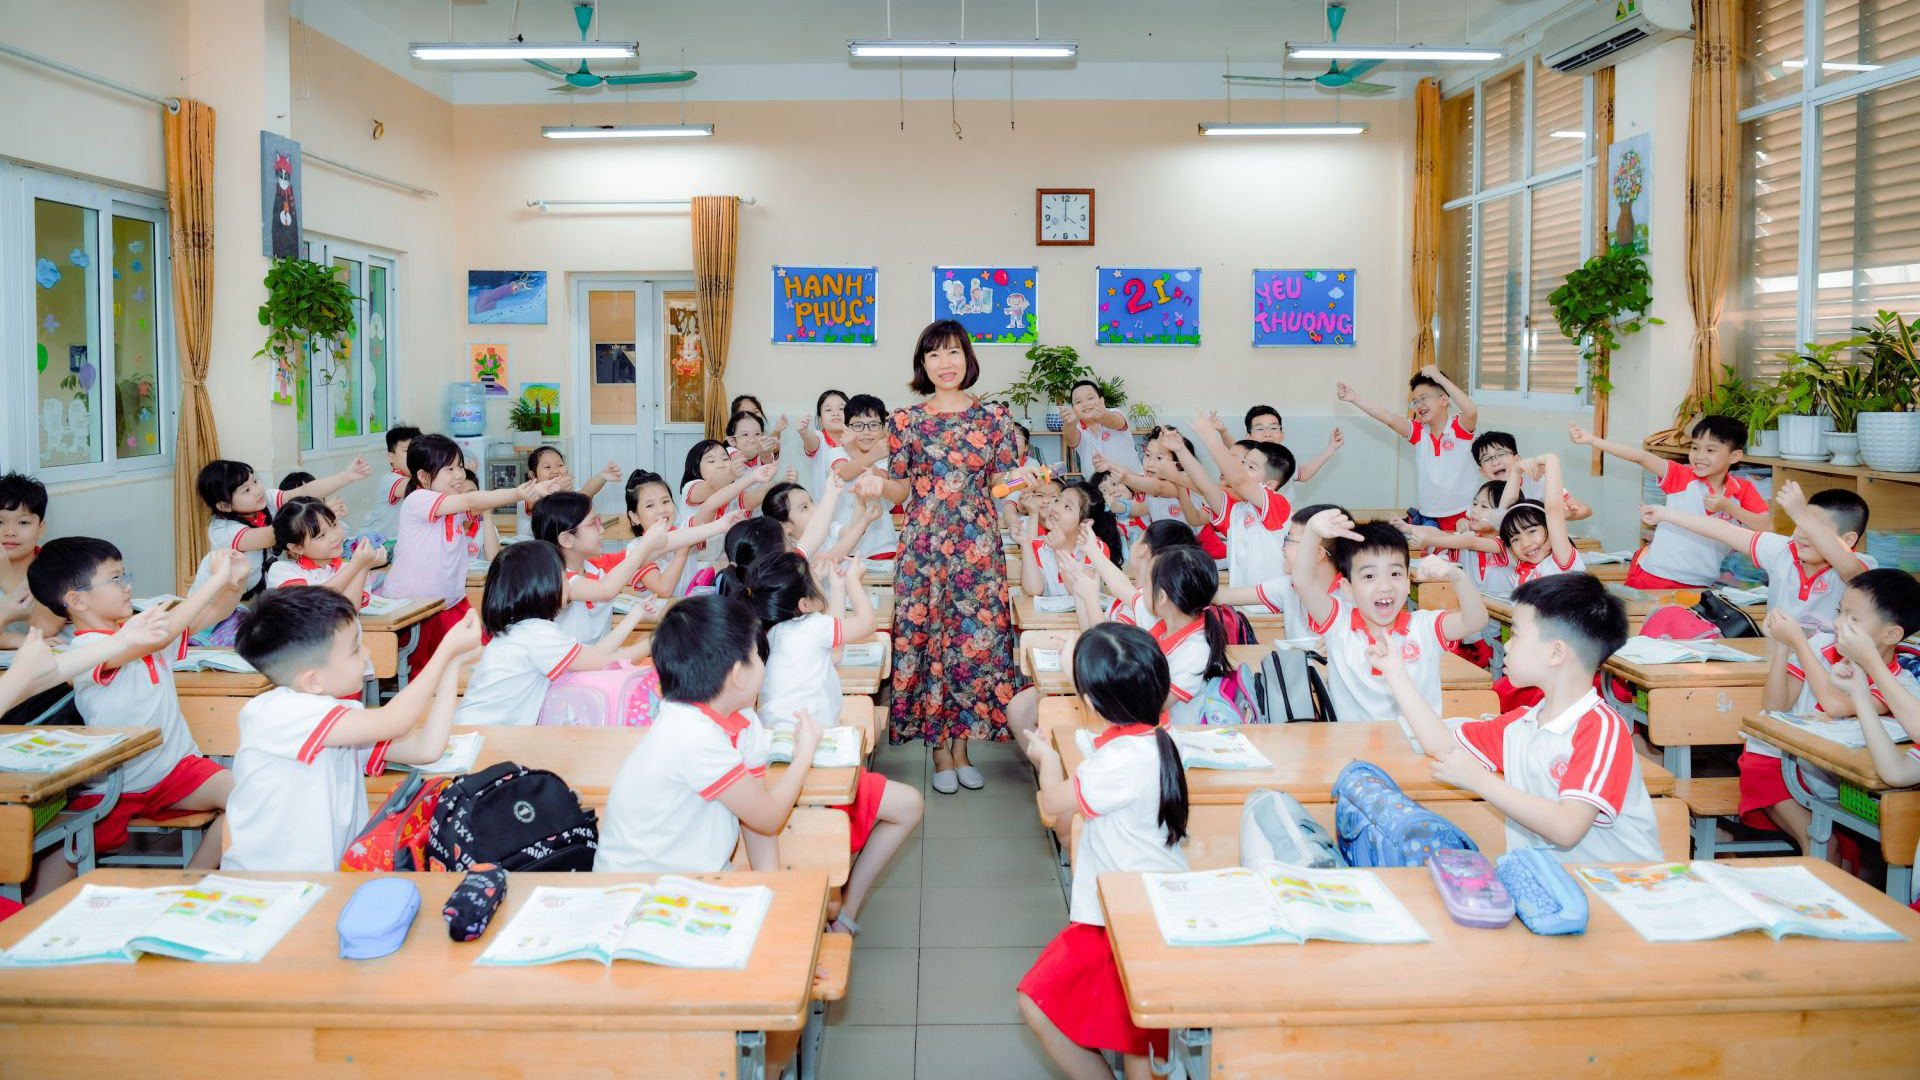 Tiểu học Dịch Vọng A chú trọng xây dựng "Trường học hạnh phúc" cho học trò